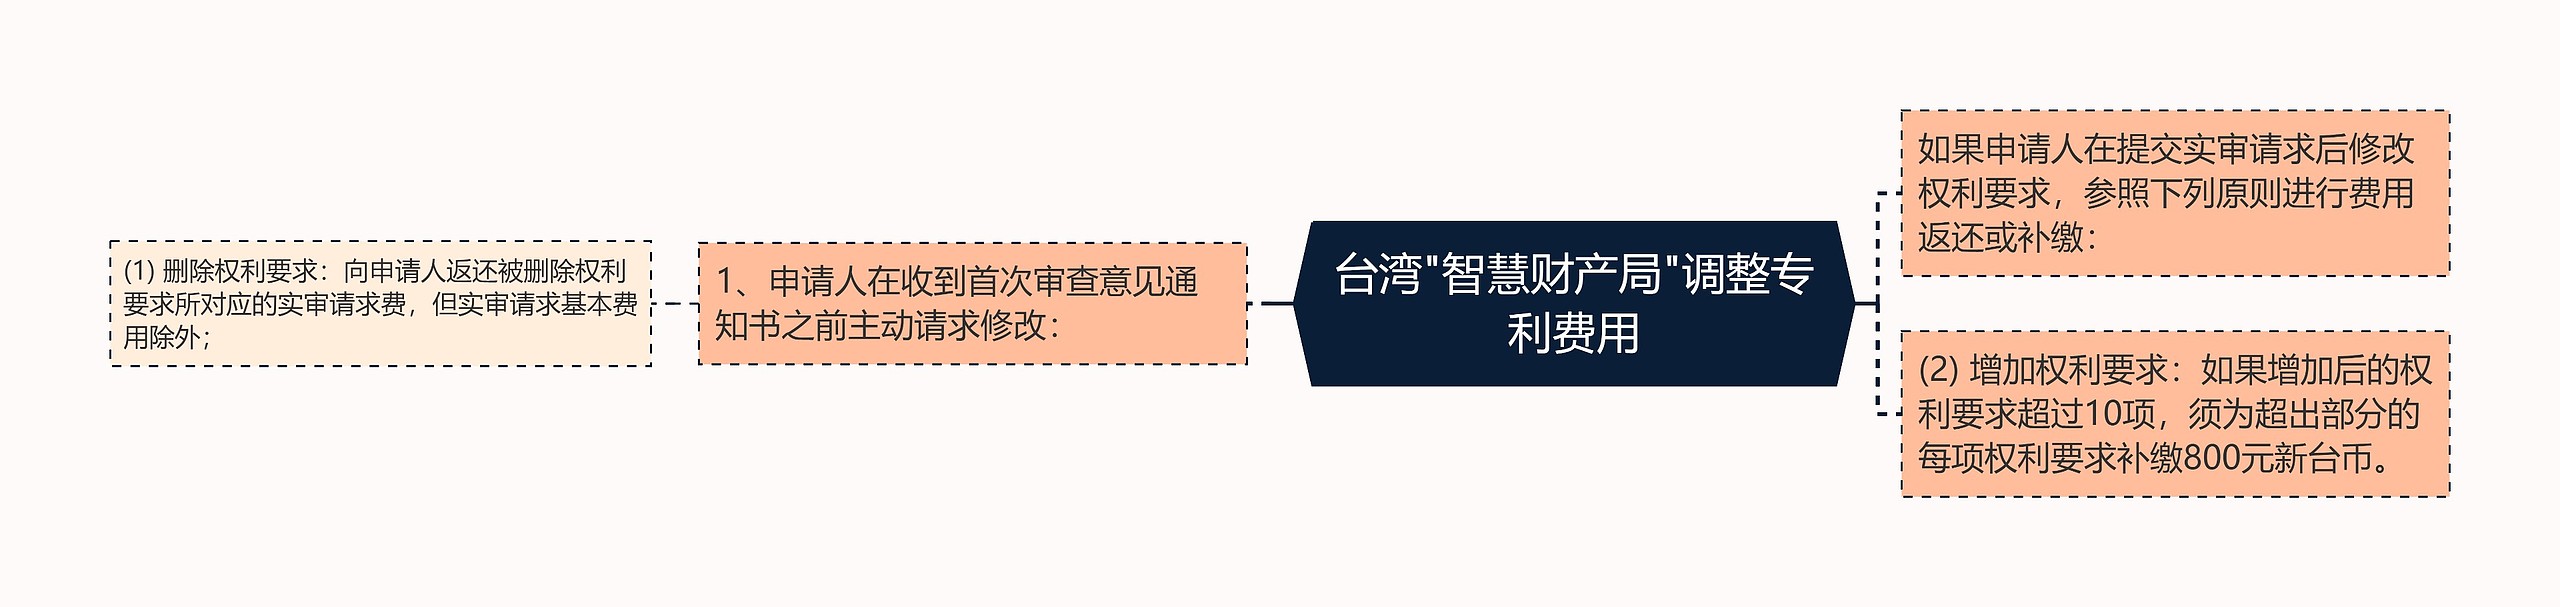 台湾"智慧财产局"调整专利费用思维导图